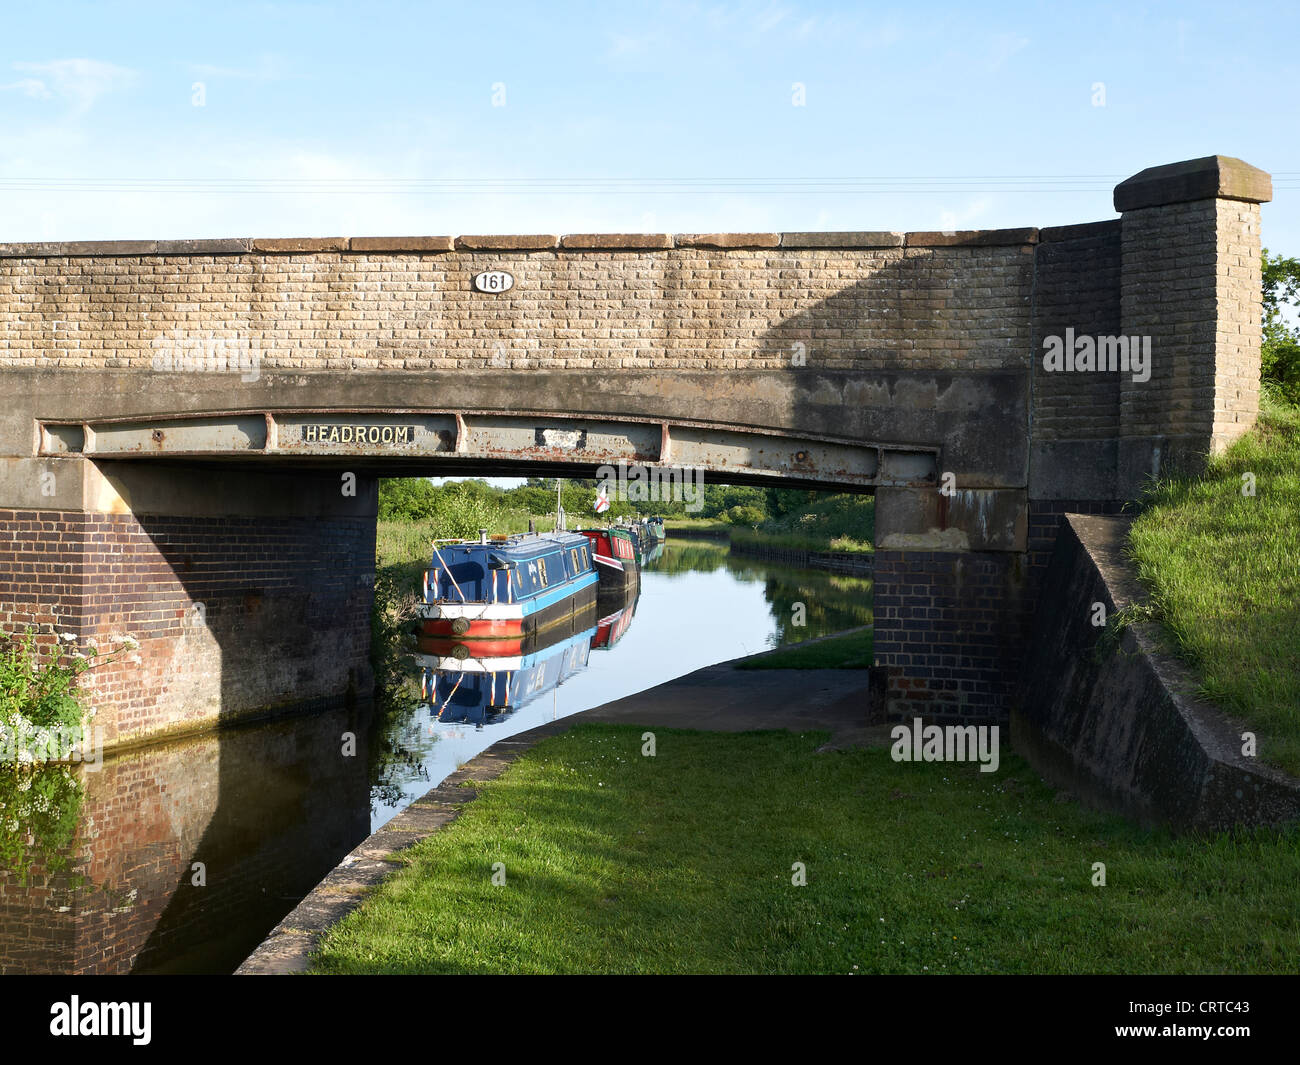 Narrowboats on the Trent & Mersey canal near Sandbach UK Stock Photo